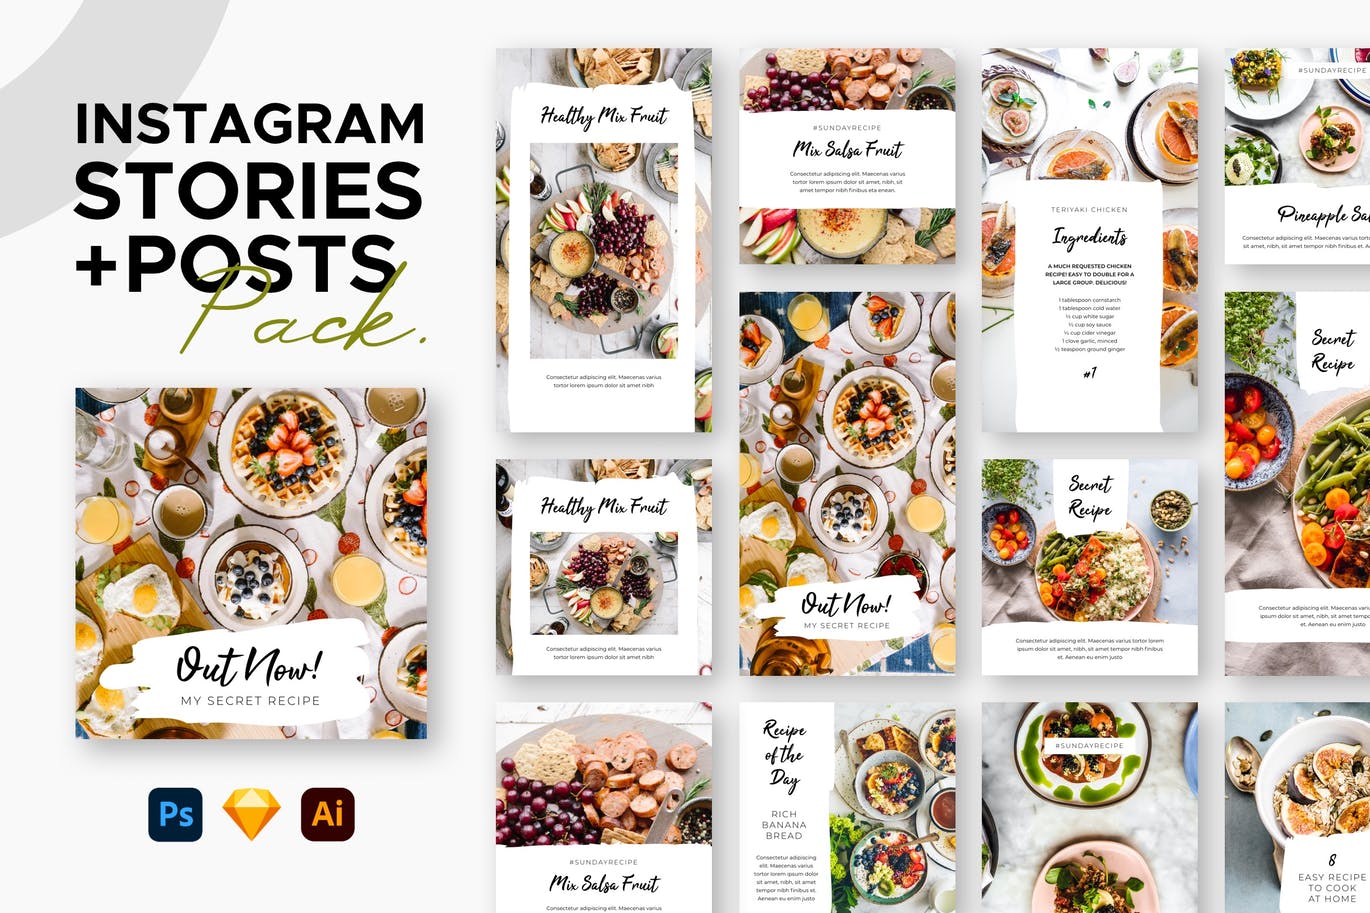 健康沙拉食品美食促销活动Instagram故事&帖子设计模板 Instagram Stories + Posts设计素材模板